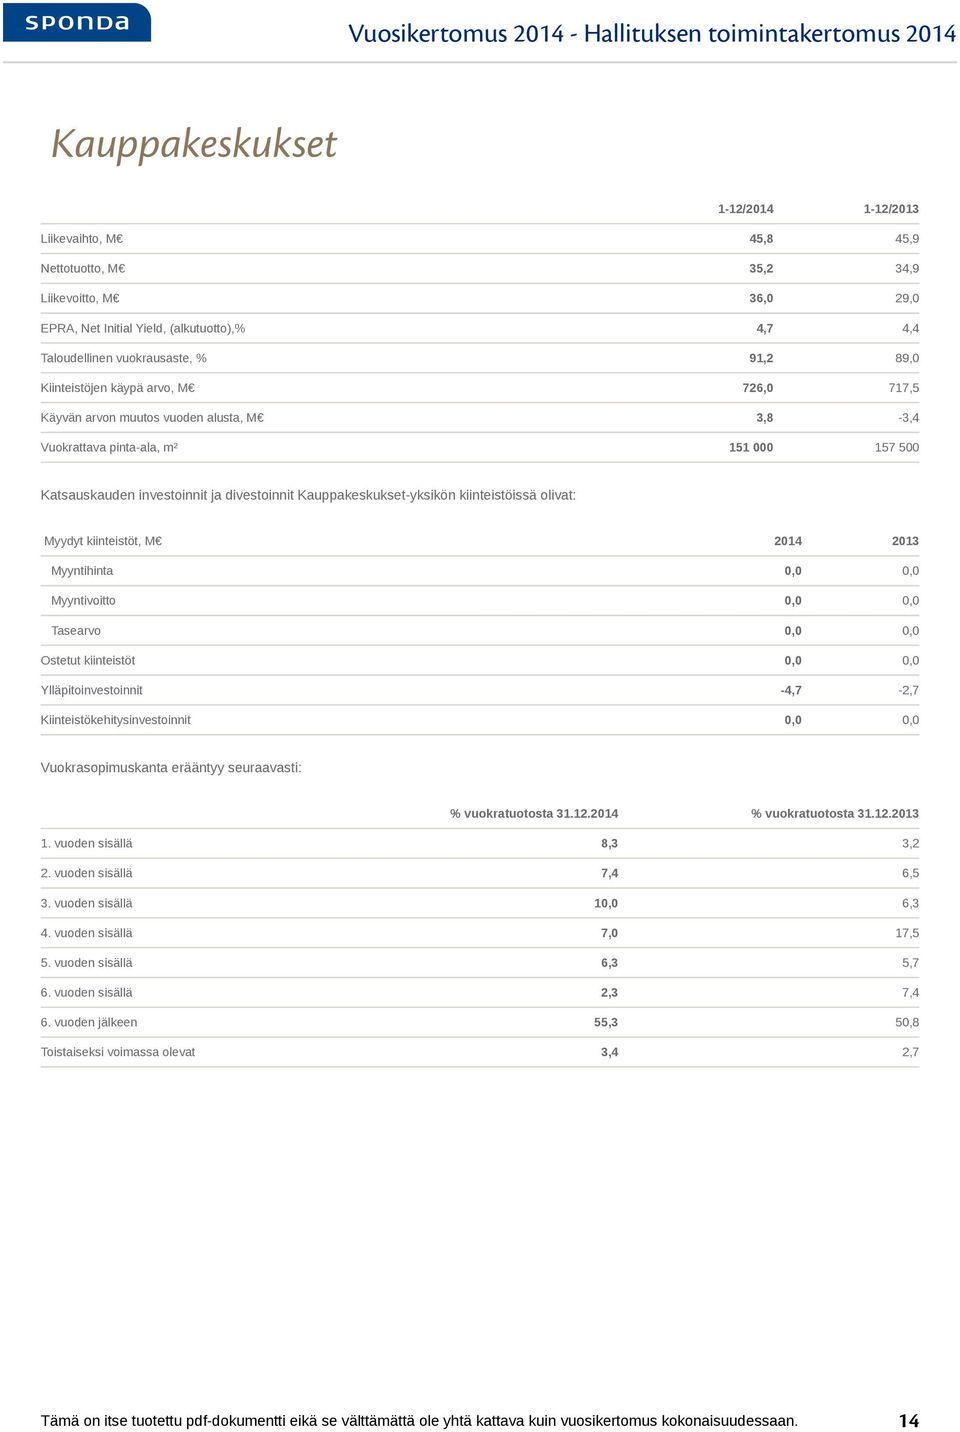 Katsauskauden investoinnit ja divestoinnit Kauppakeskukset-yksikön kiinteistöissä olivat: Myydyt kiinteistöt, M 2014 2013 Myyntihinta 0,0 0,0 Myyntivoitto 0,0 0,0 Tasearvo 0,0 0,0 Ostetut kiinteistöt